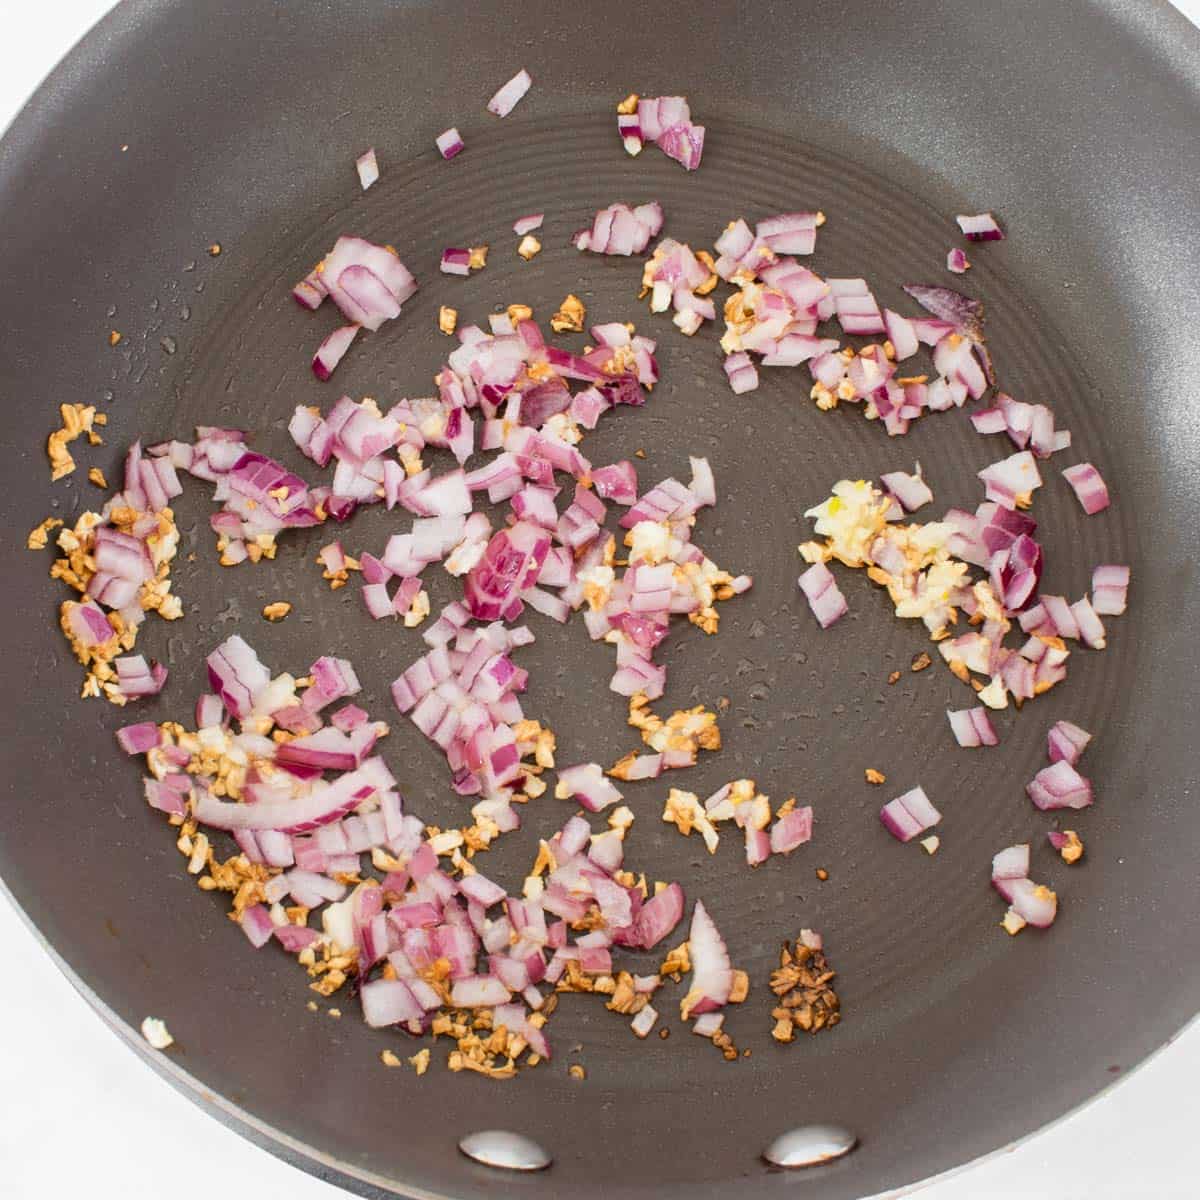 sauteed onion garlic in a pan.